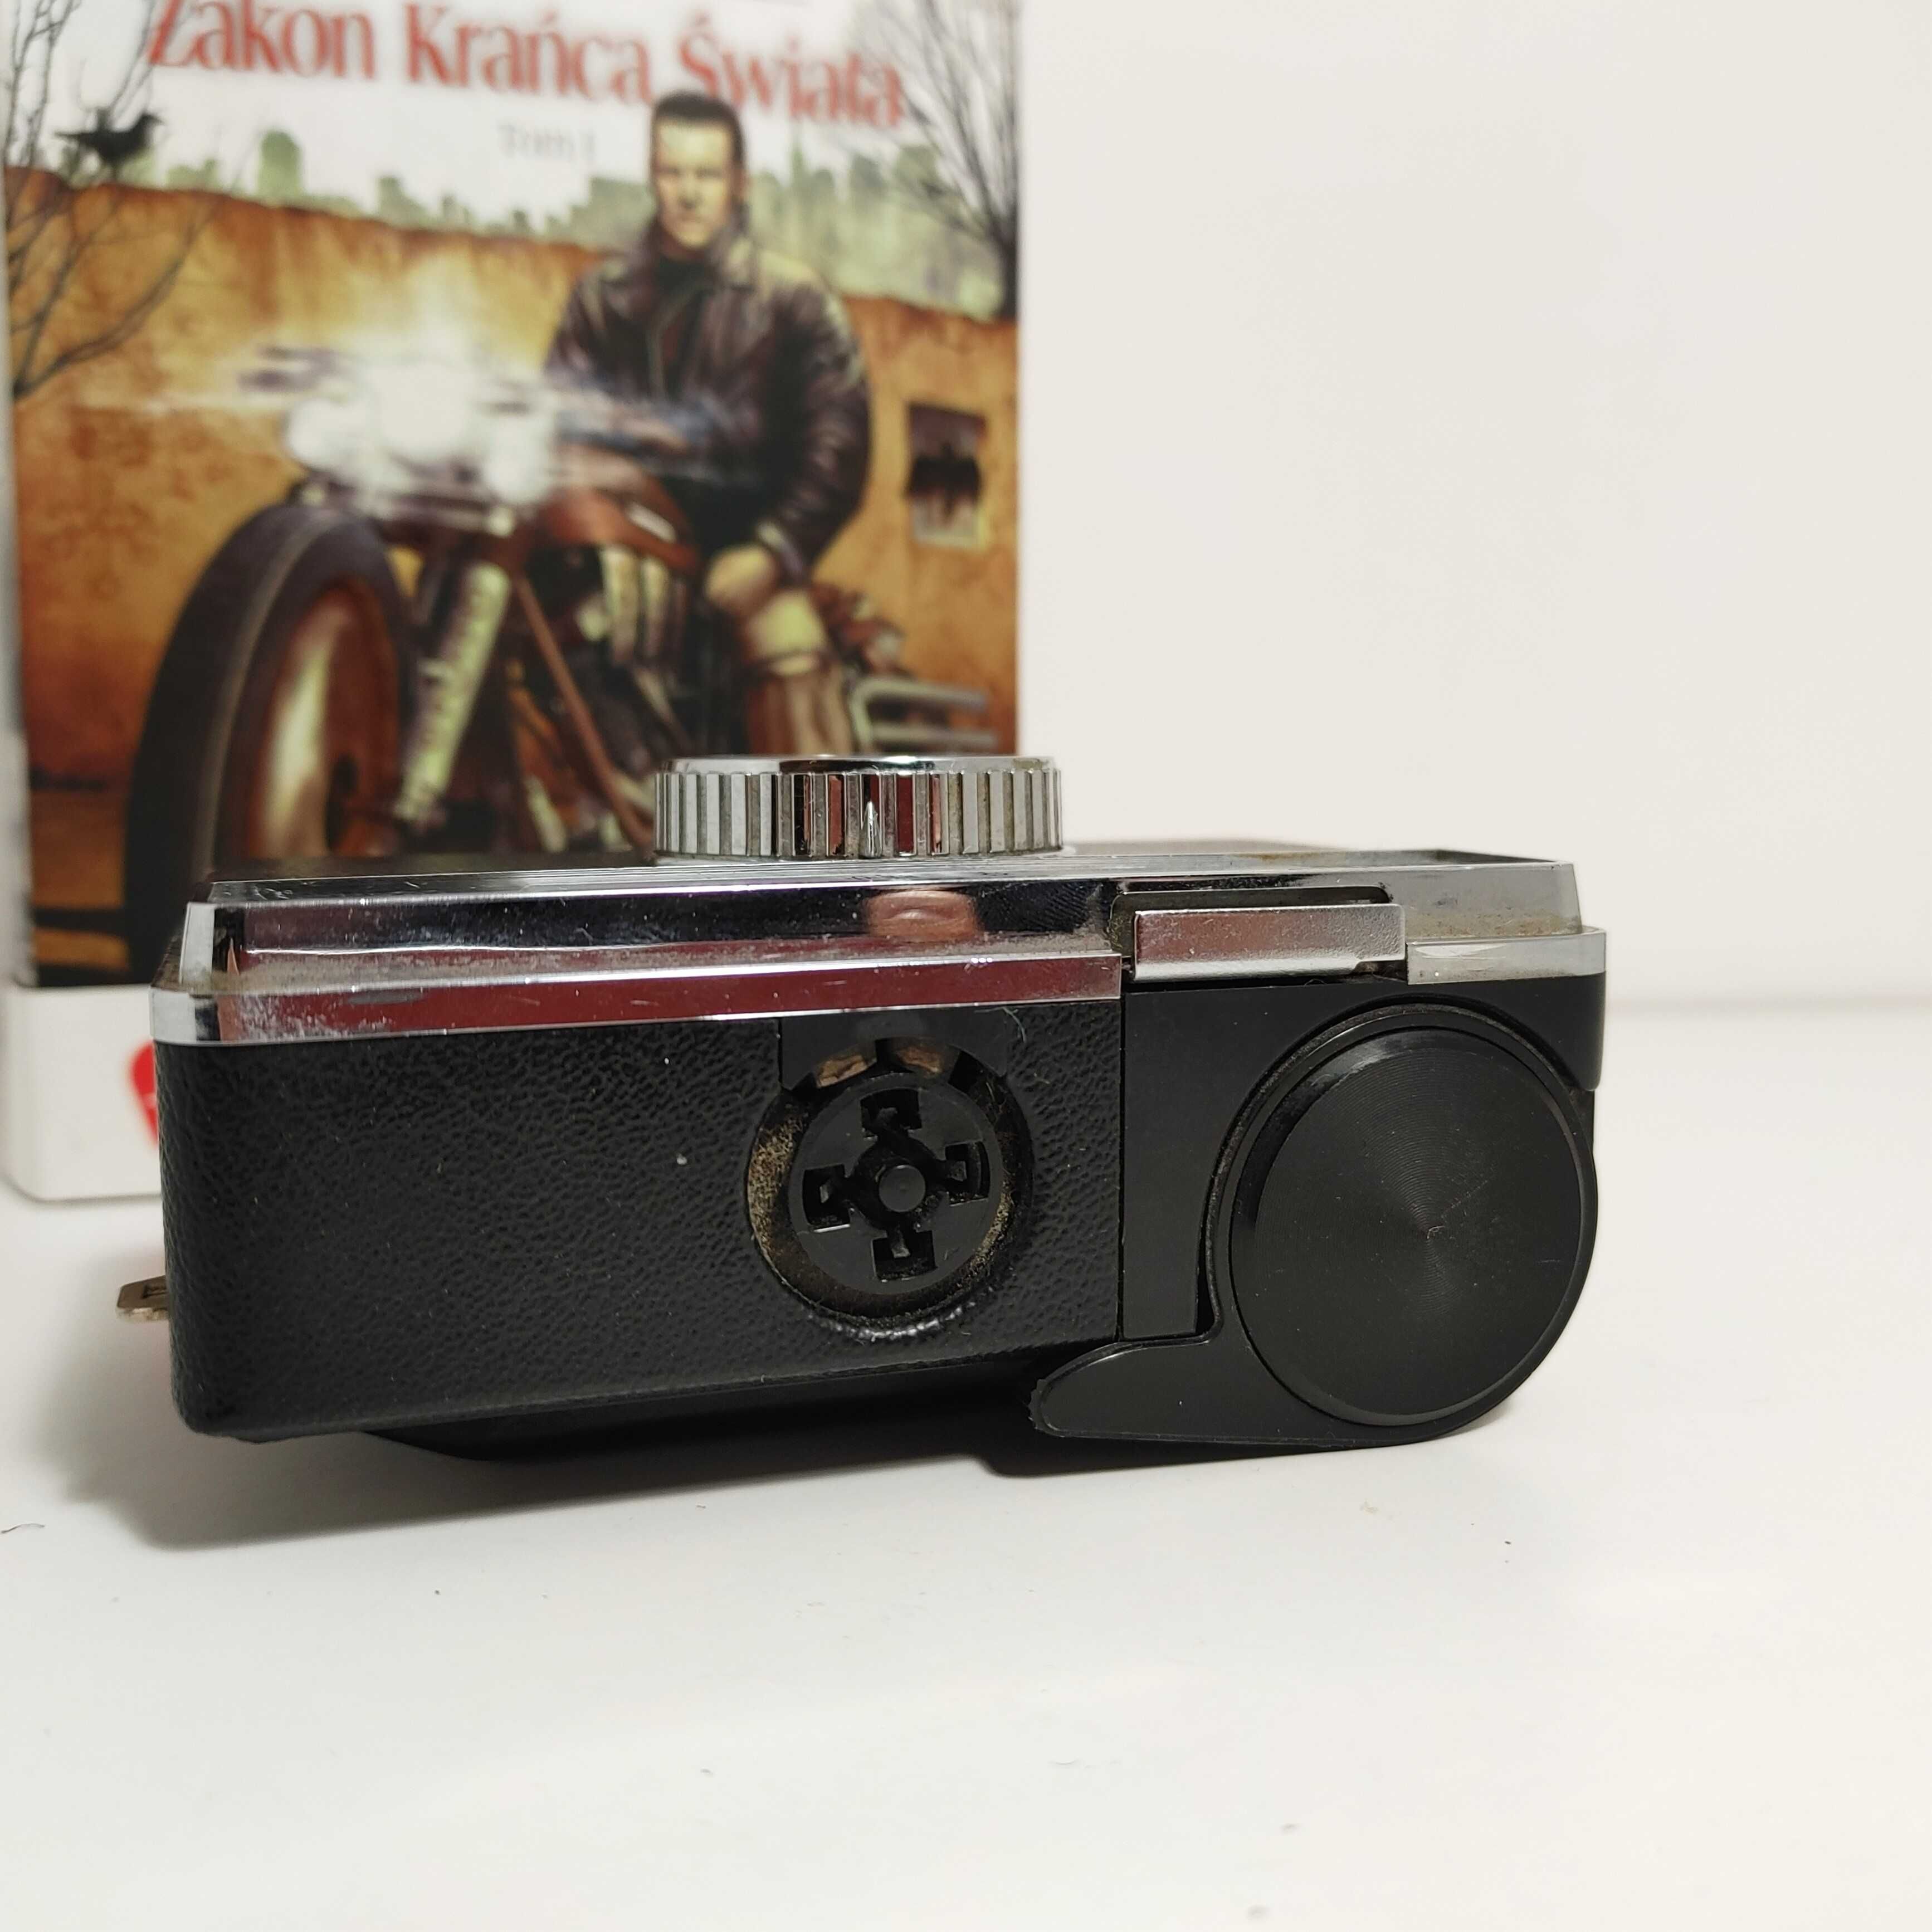 Analogowy aparat foto Kodak Instamatic 133 z oryginalnym futerałem